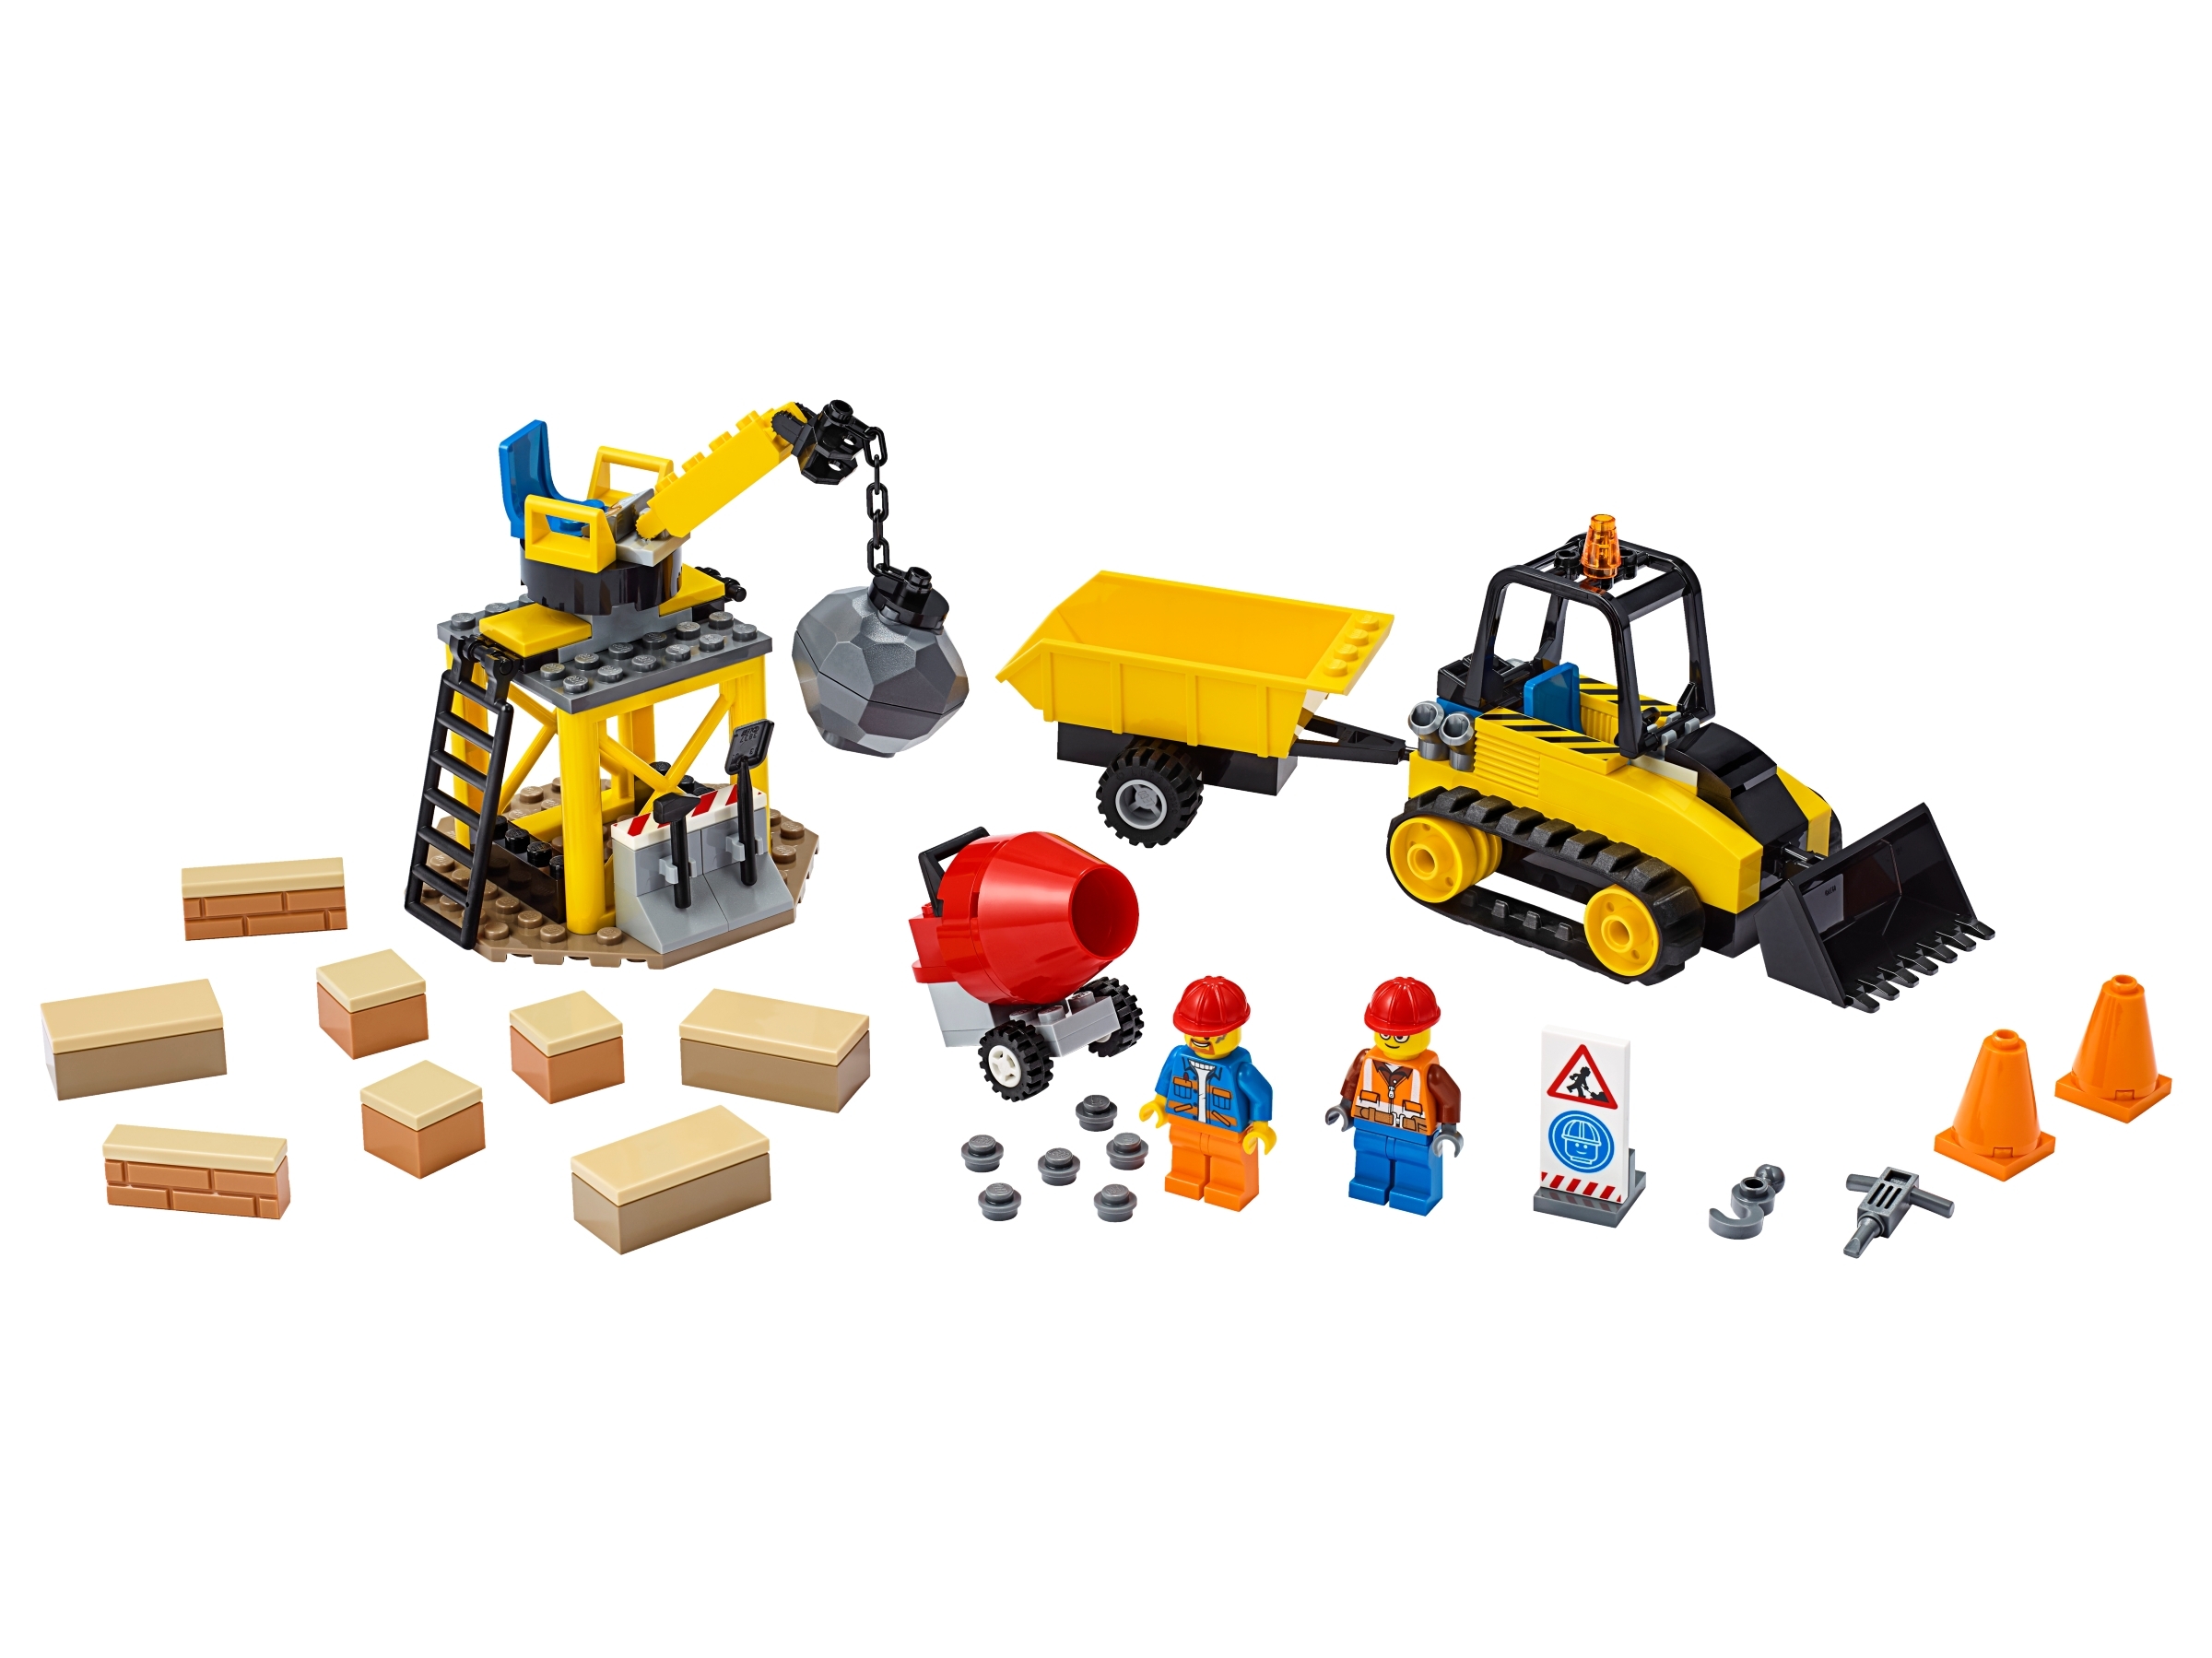 Le chantier de démolition 60252 | City | Boutique LEGO® officielle CA